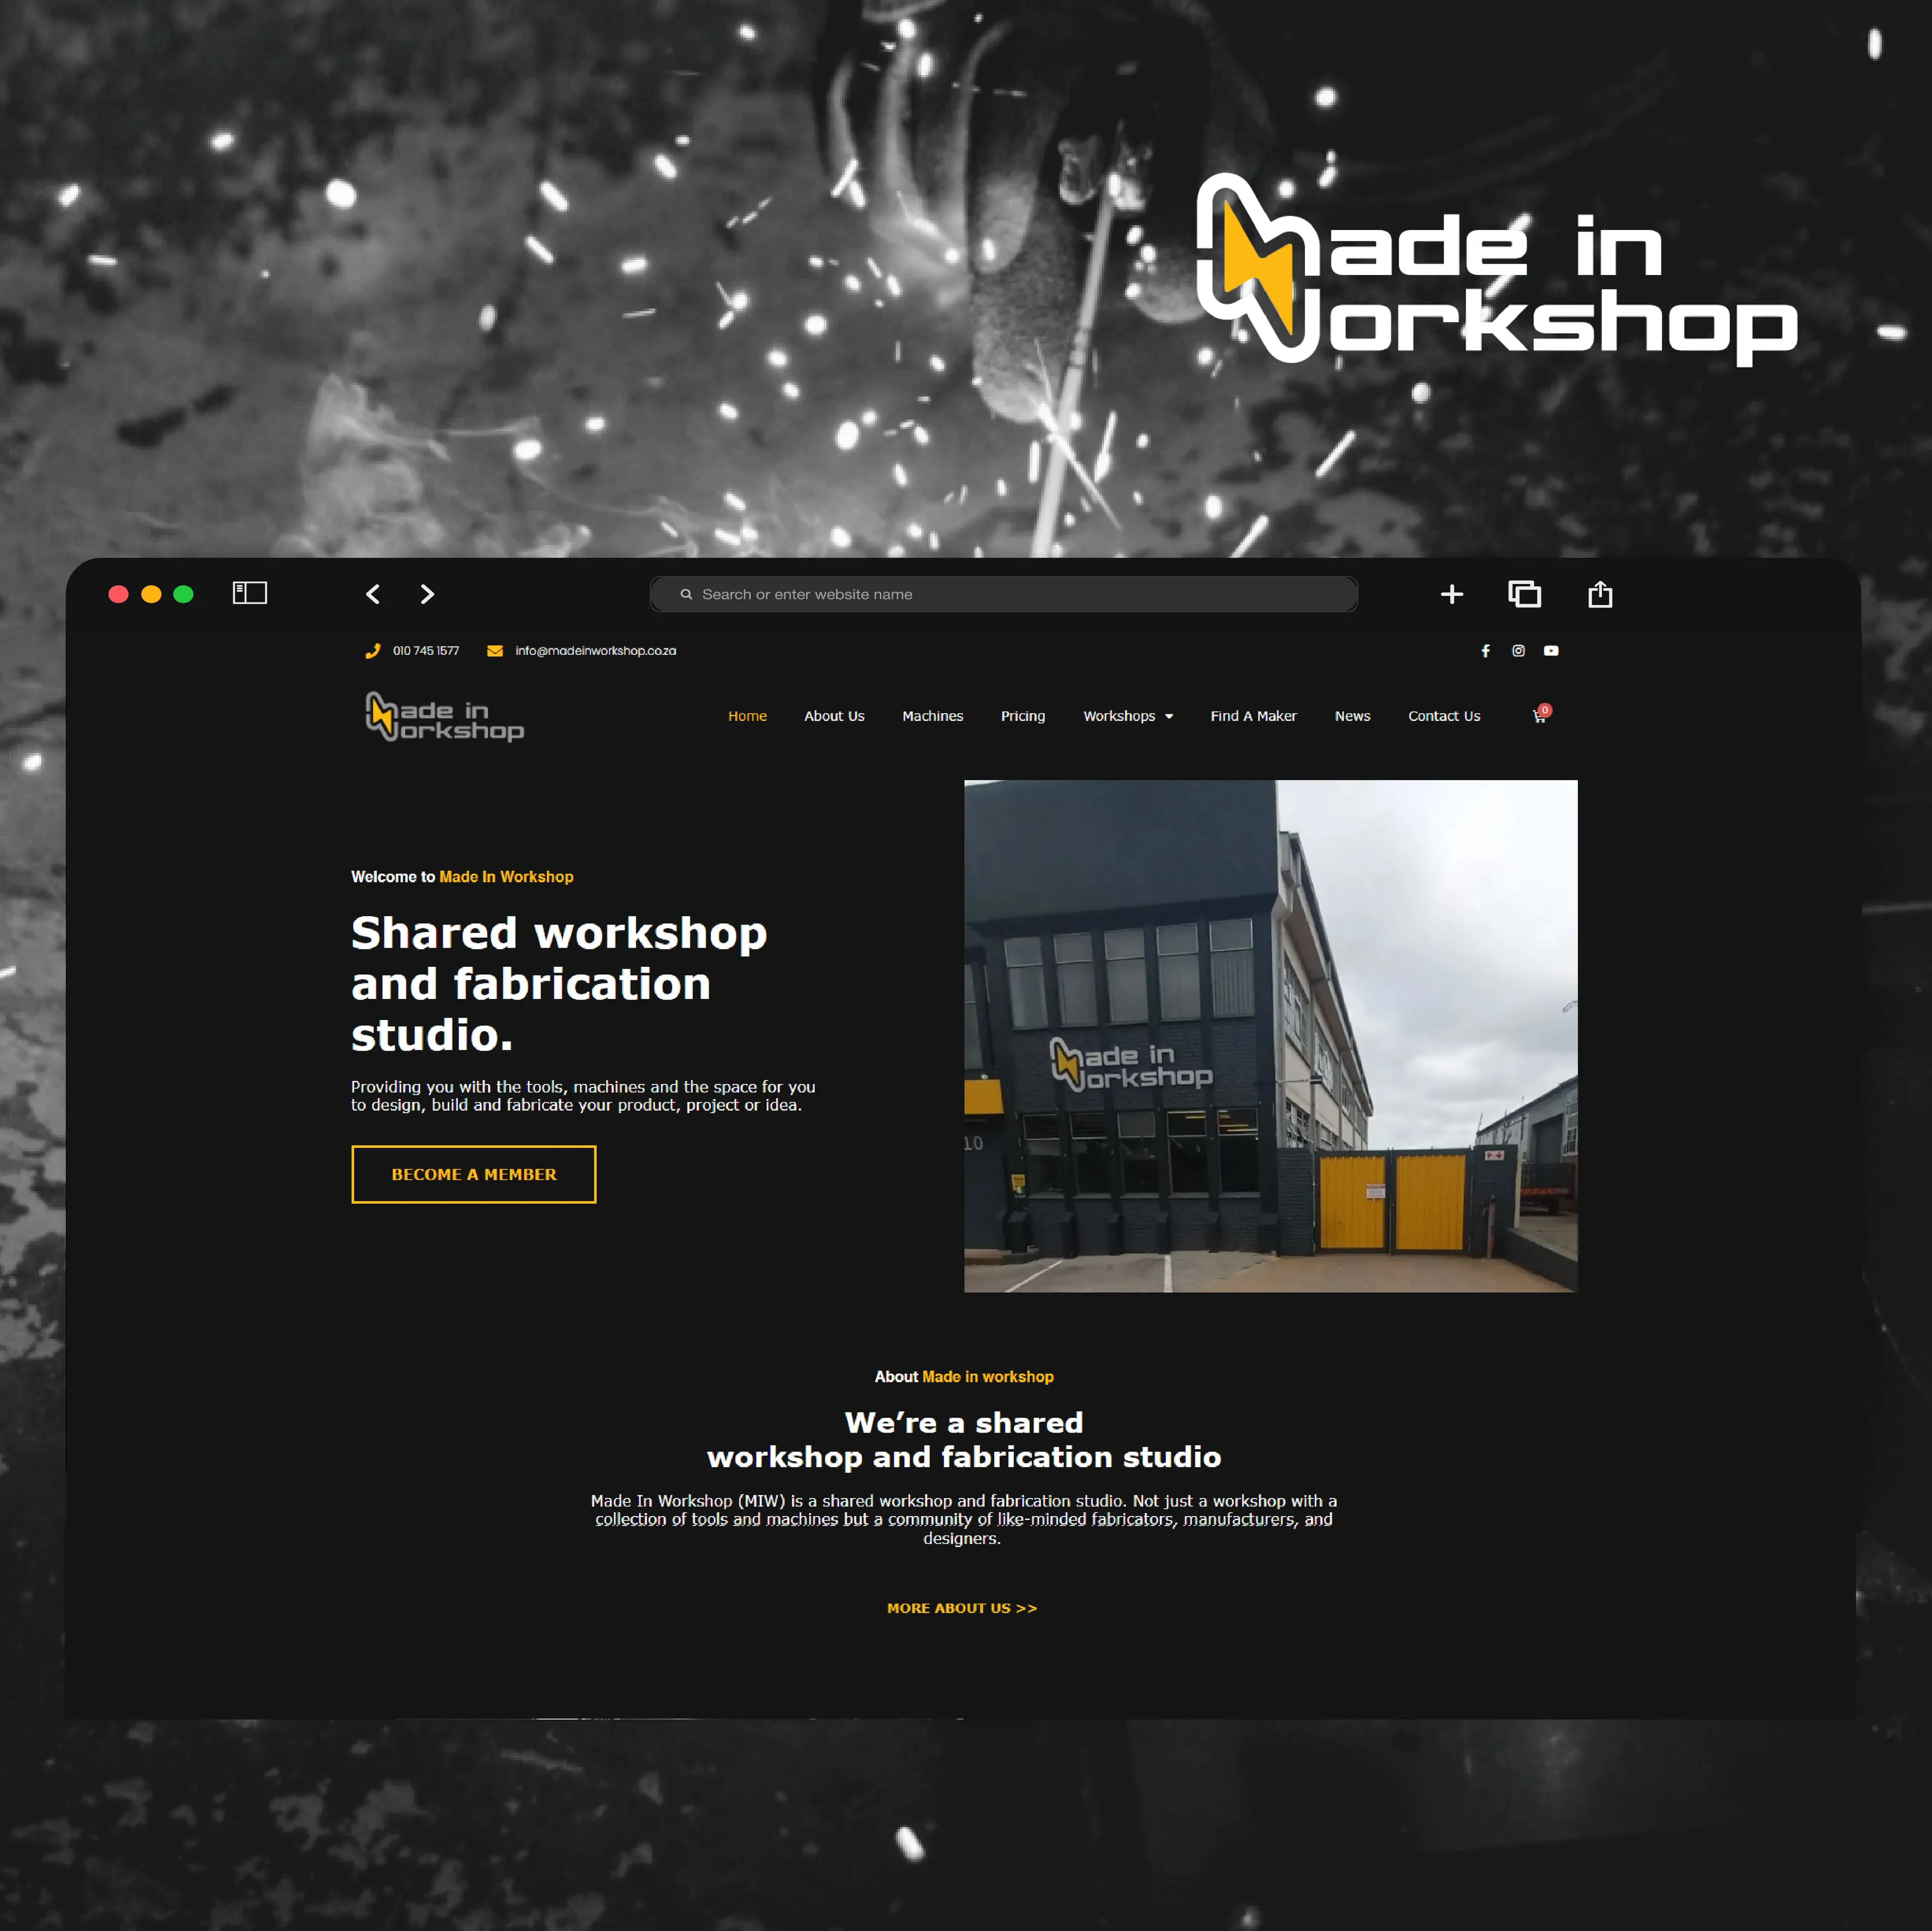 Made in Workshop website